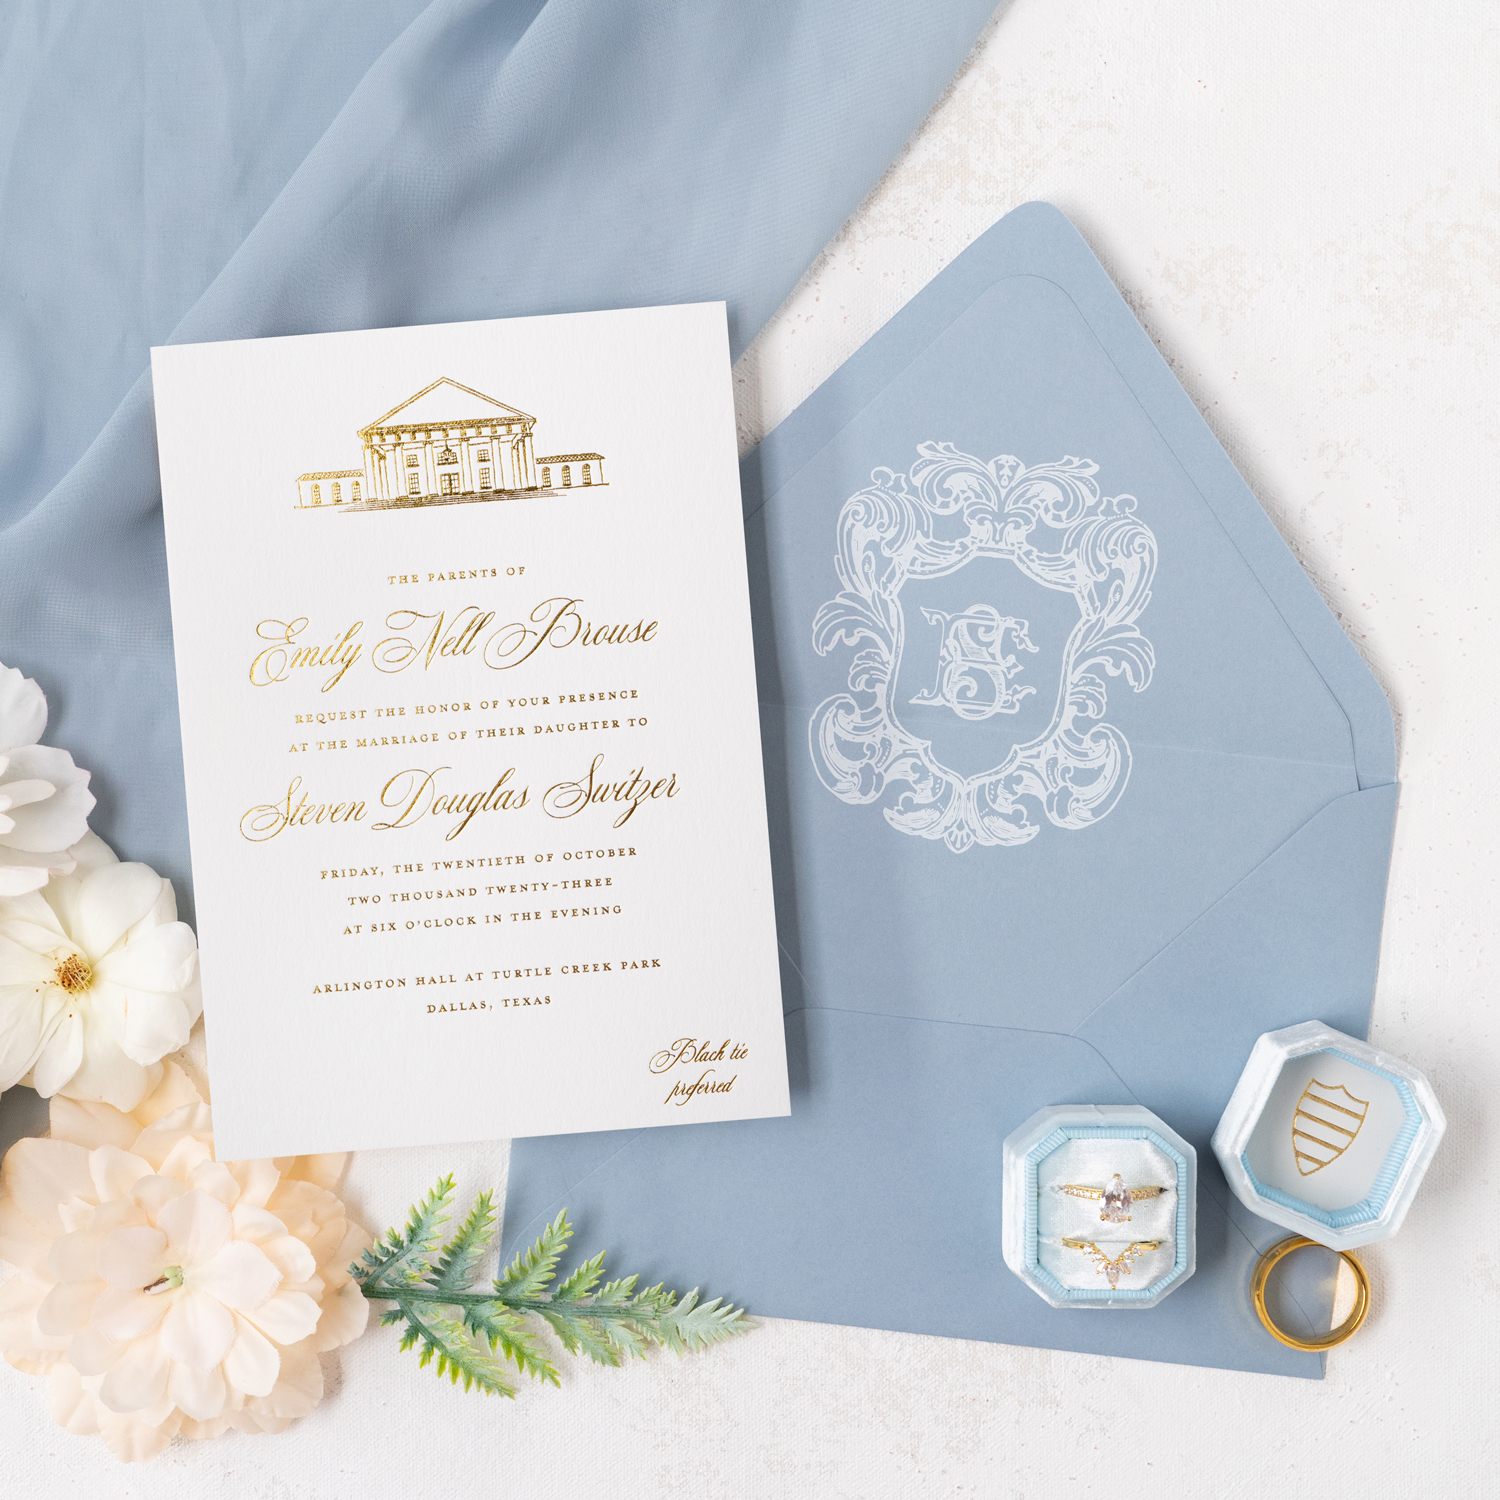 Turtle Creek Park wedding invitations